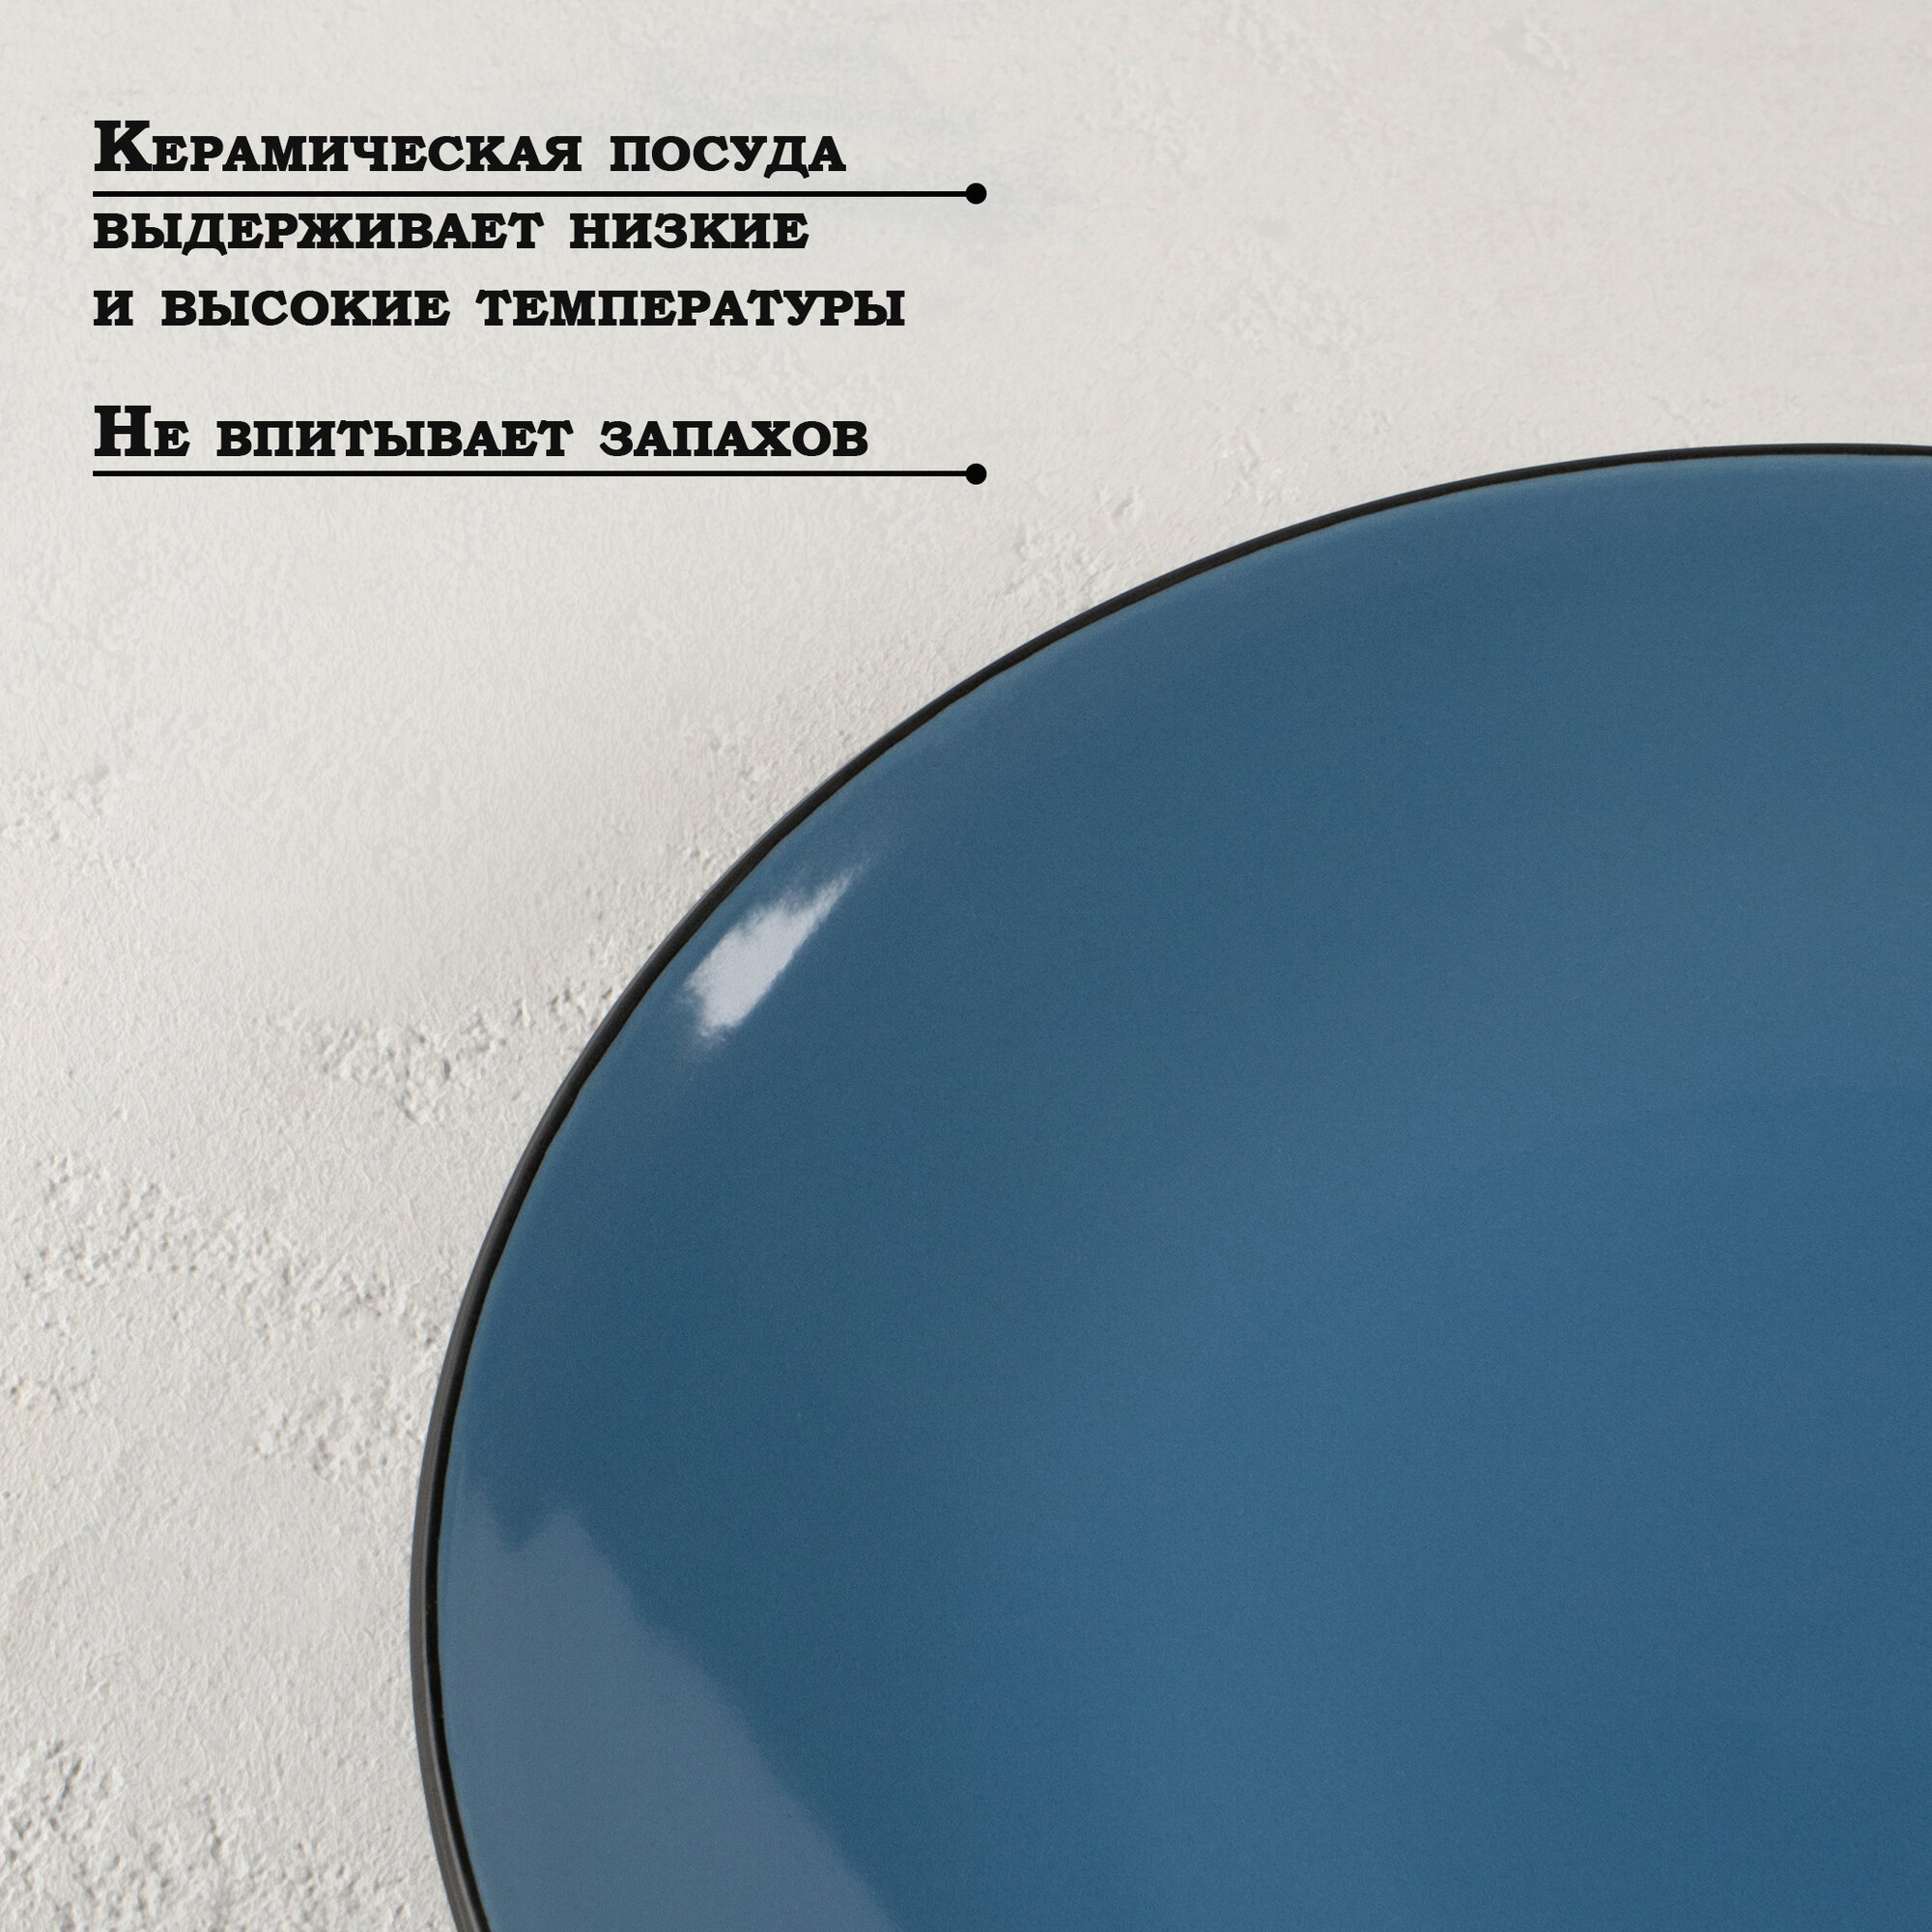 Тарелка керамическая обеденная Доляна «Глянец», d=26 см, цвет синий